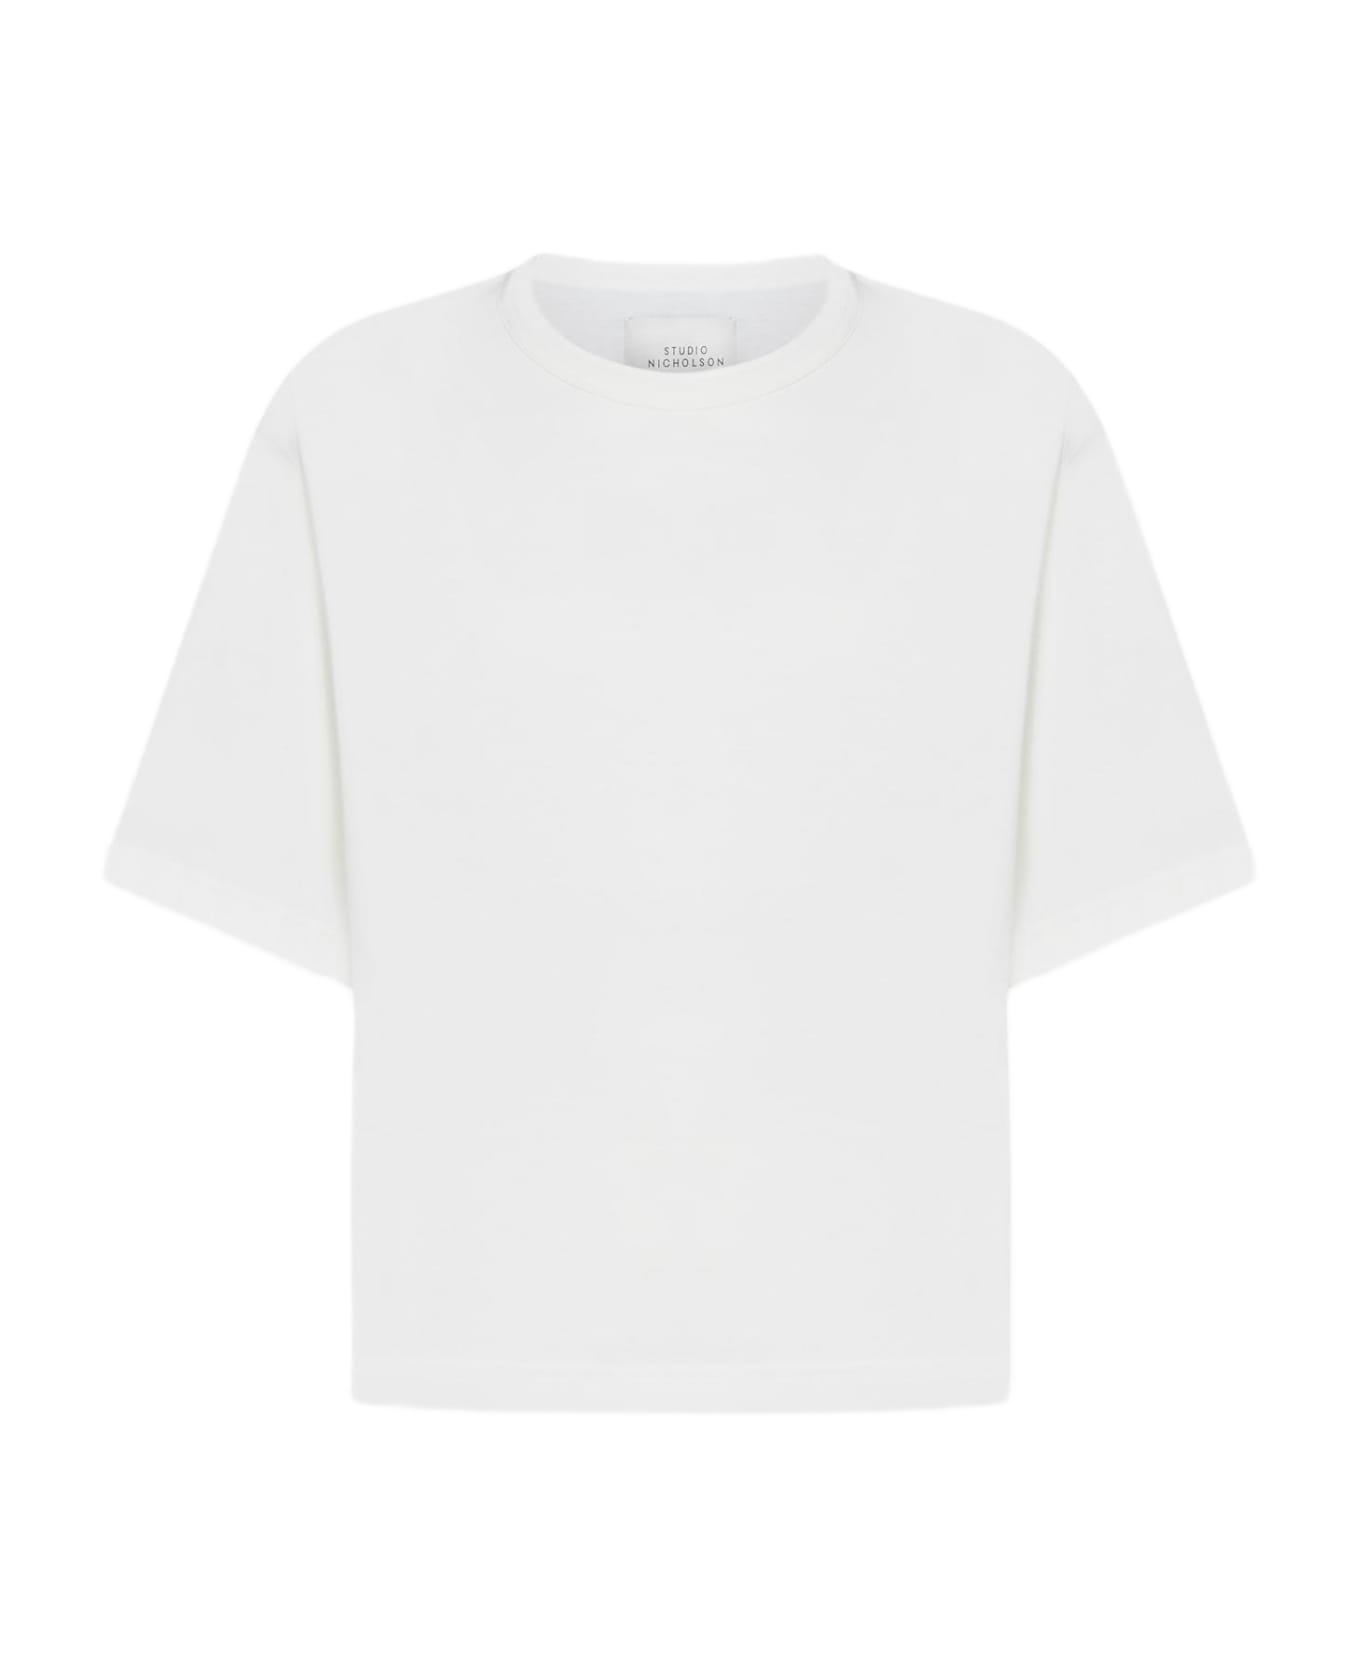 Studio Nicholson Lees Cotton T-shirt - White